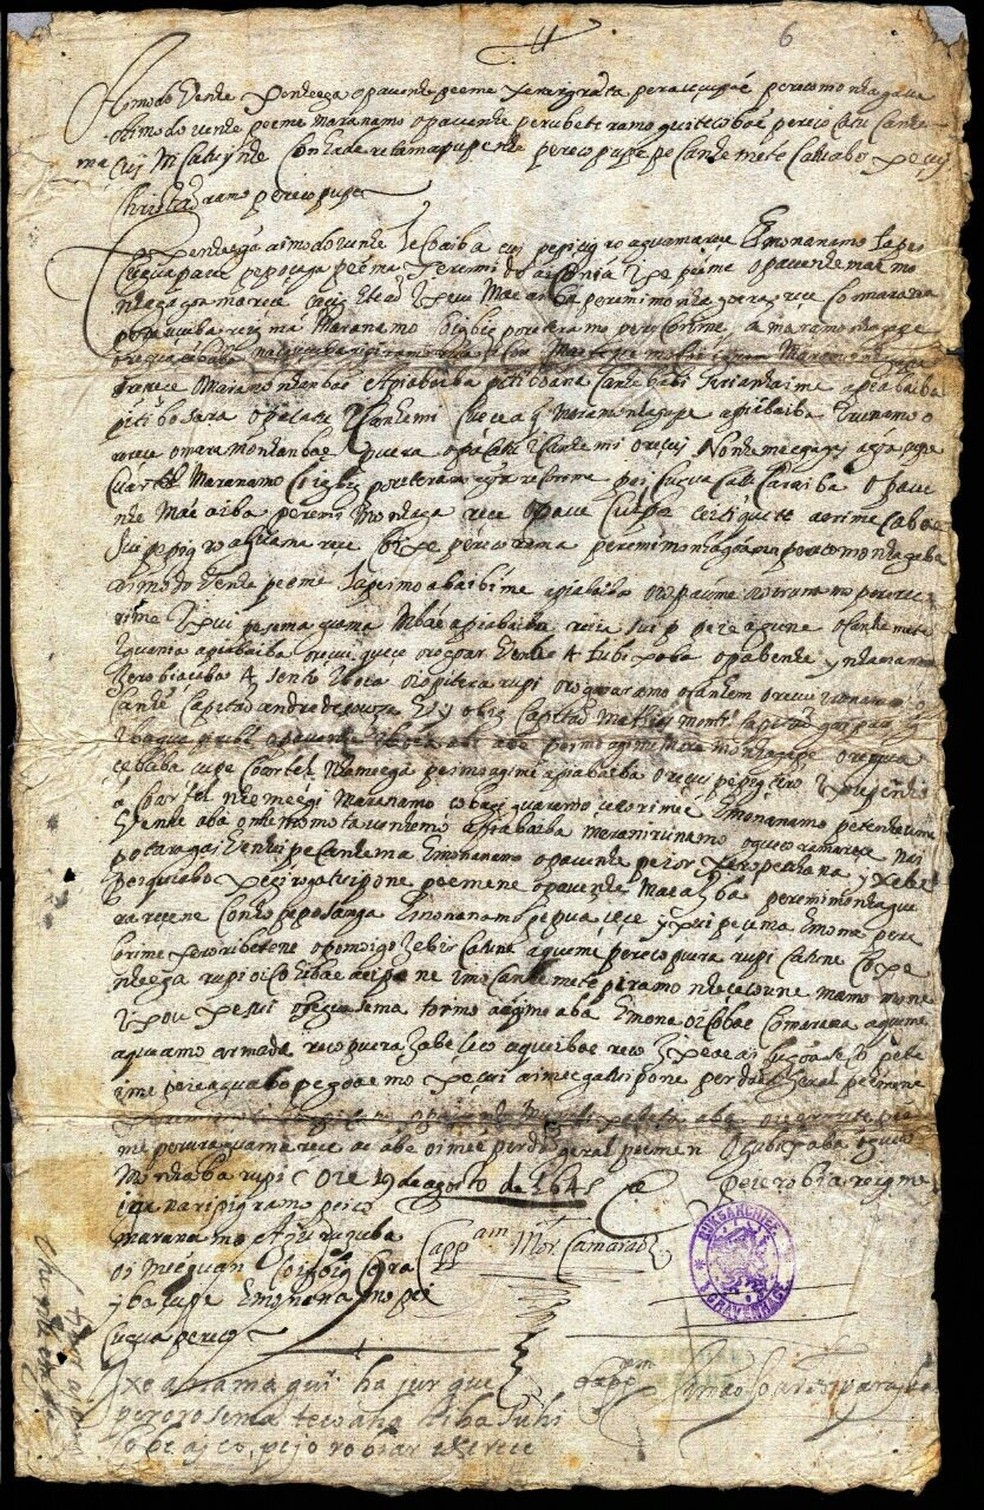 Carta em tupi de Felipe Camarão a Pedro Poti, de 19 de agosto de 1645, traduzida pelo professor da USP, Eduardo Navarro — Foto: Arquivo pessoal/Eduardo Navarro